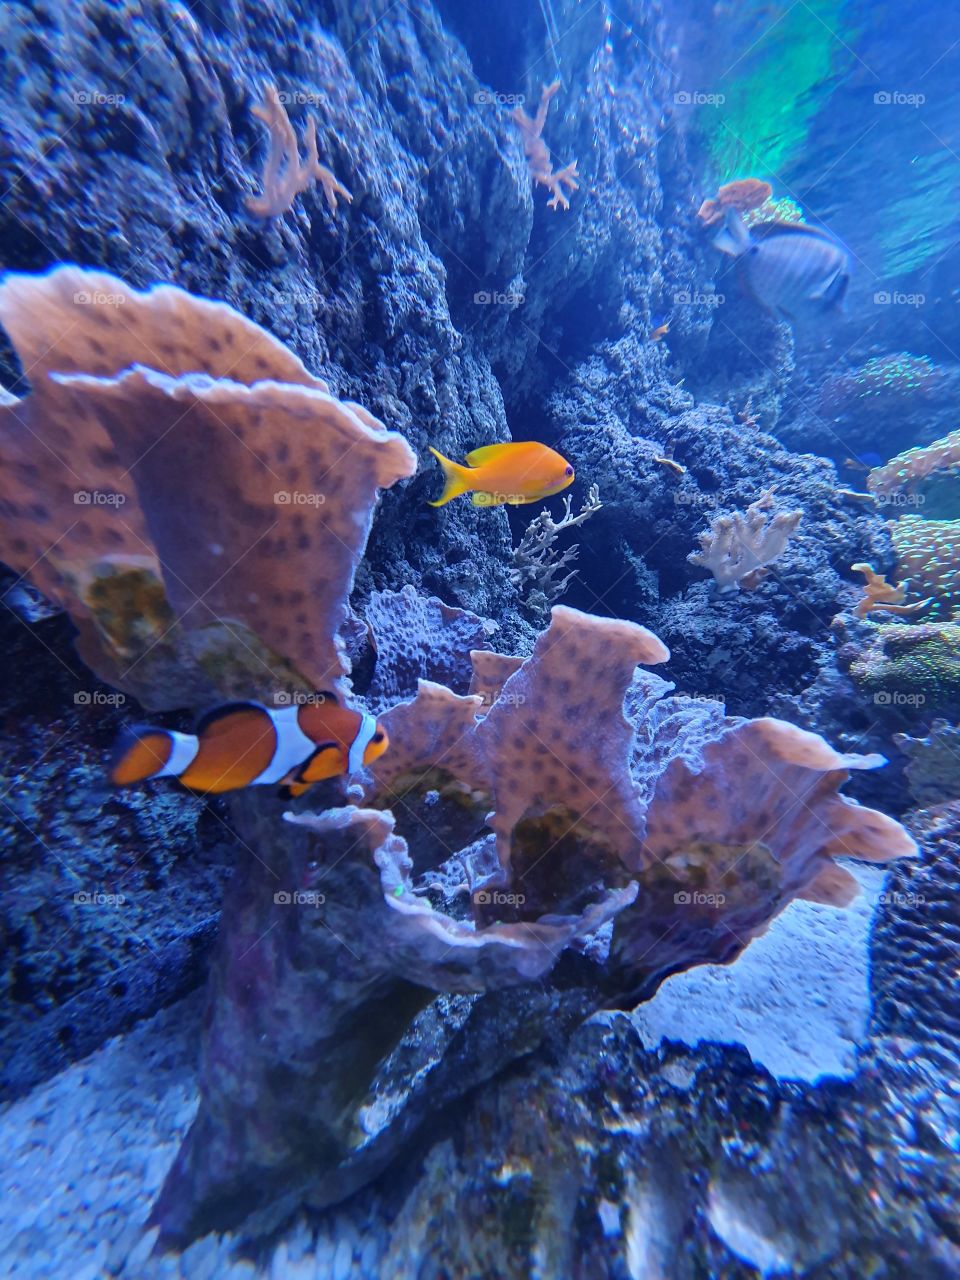 i found Nemo.